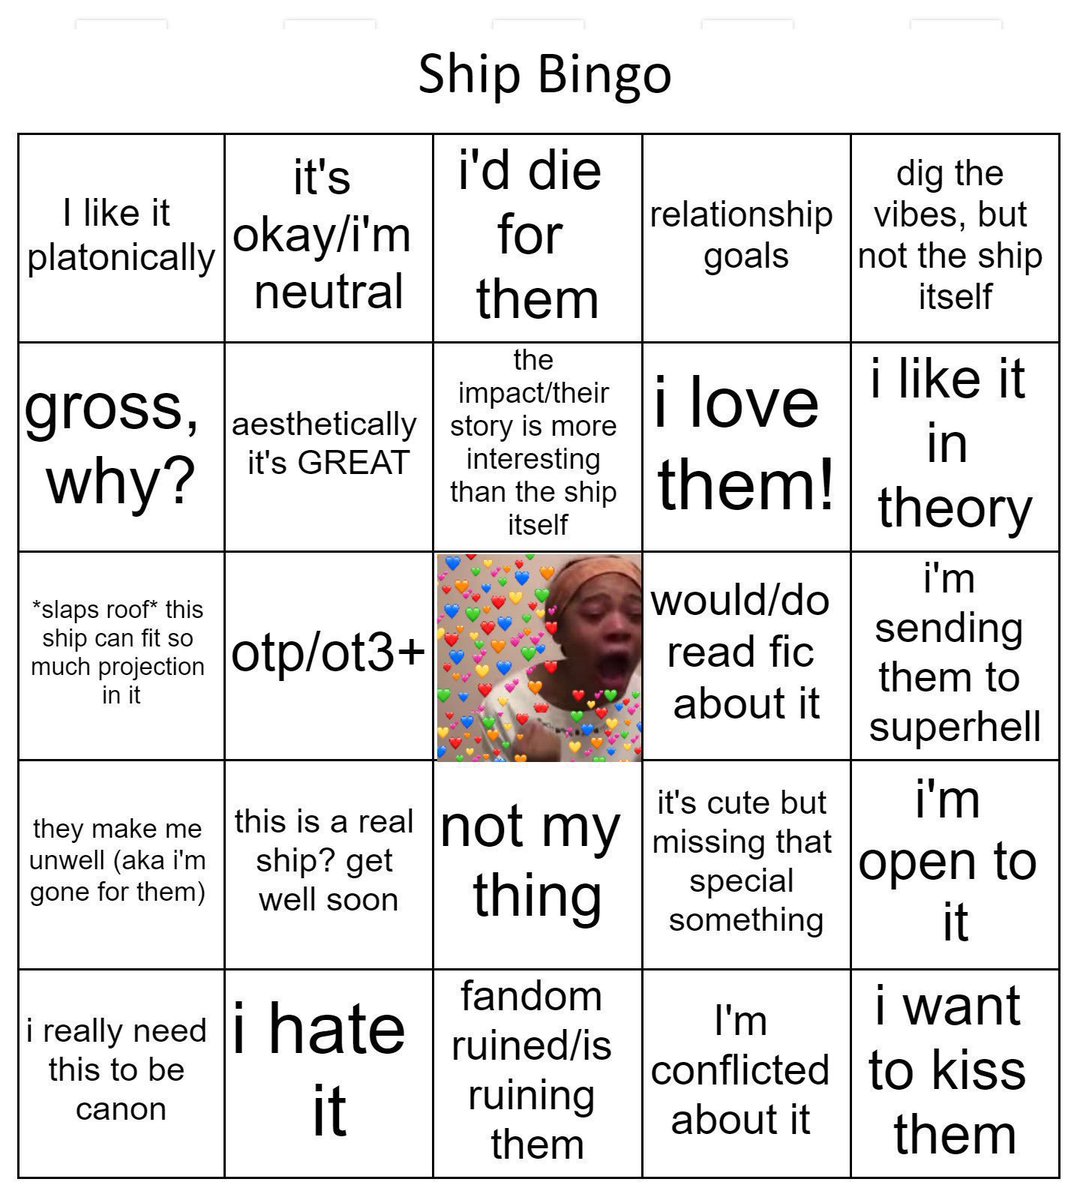 Need Fun Game Night Bingo Sheets. Find Them on Amazon